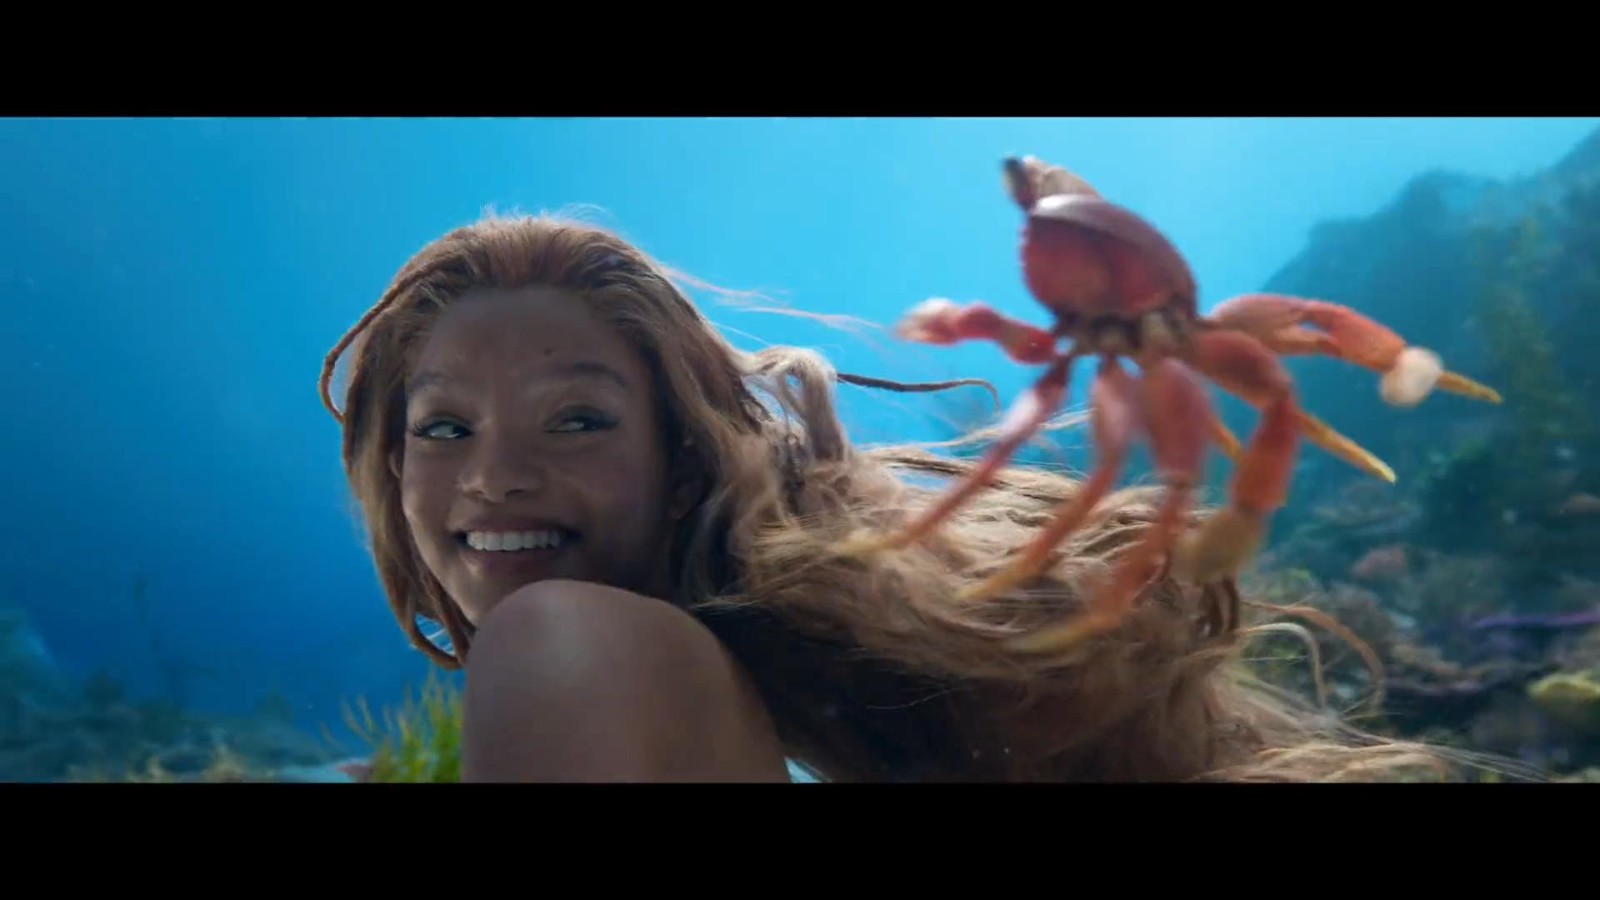 《小美人鱼》的女主持人Ariel预告了小黑鱼的歌声。
